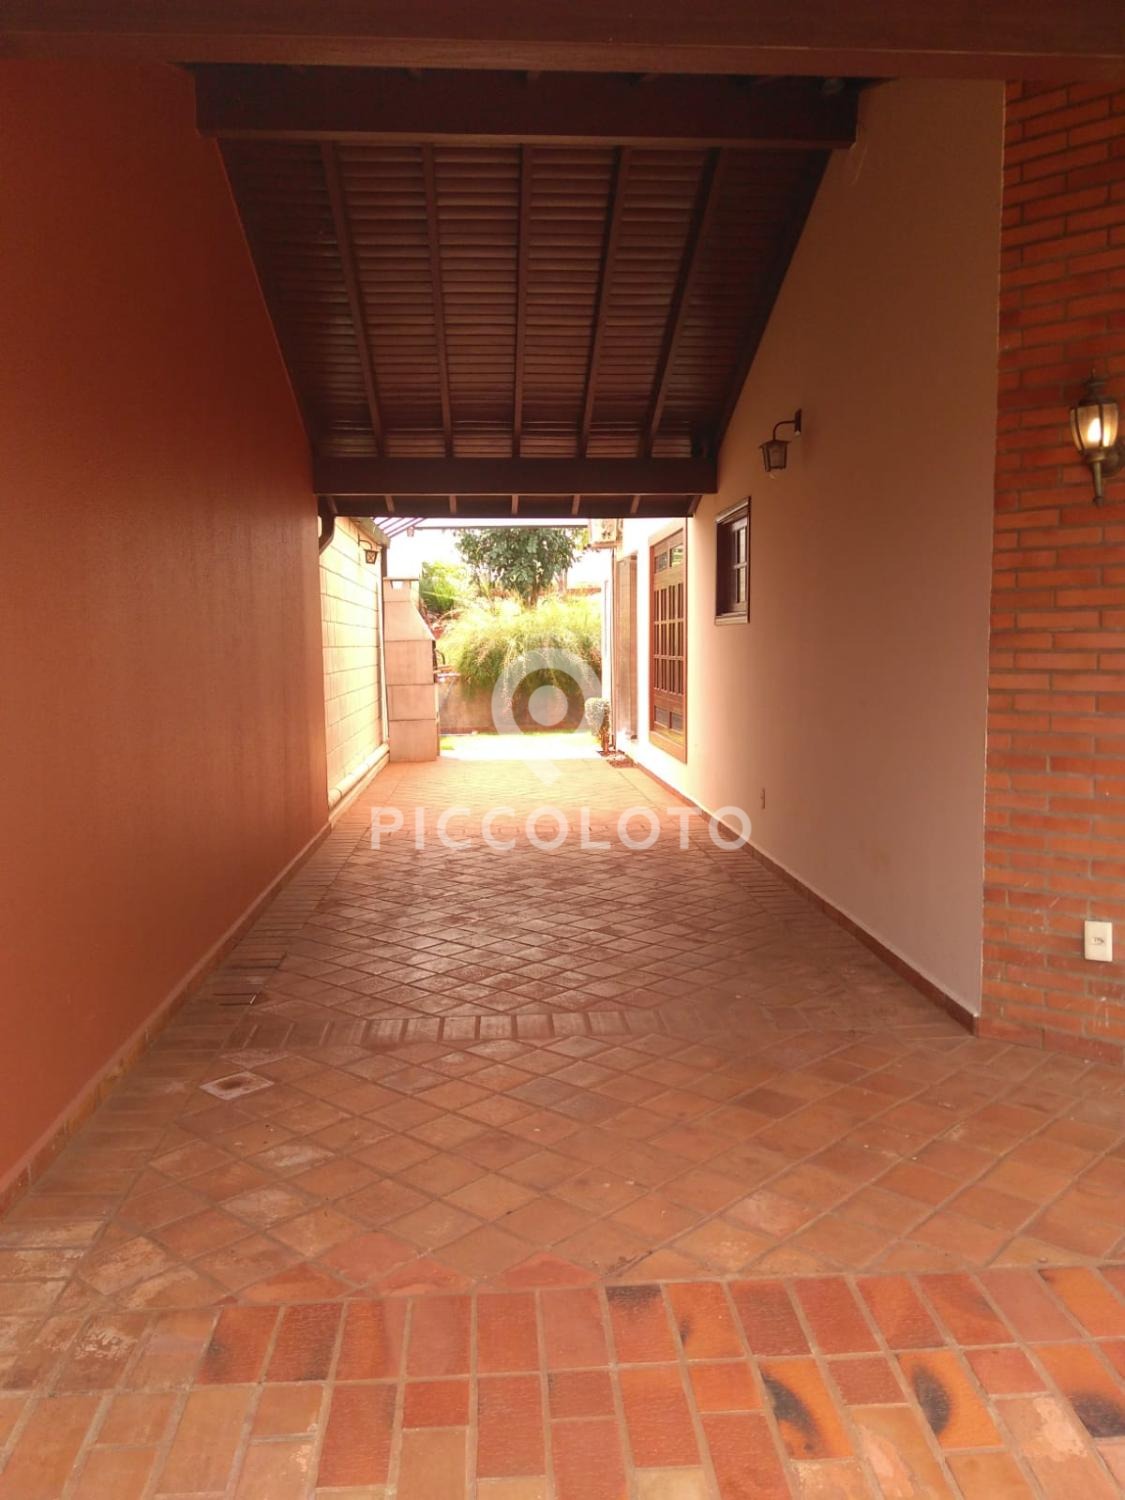 Piccoloto -Casa para alugar no Parque das Universidades em Campinas